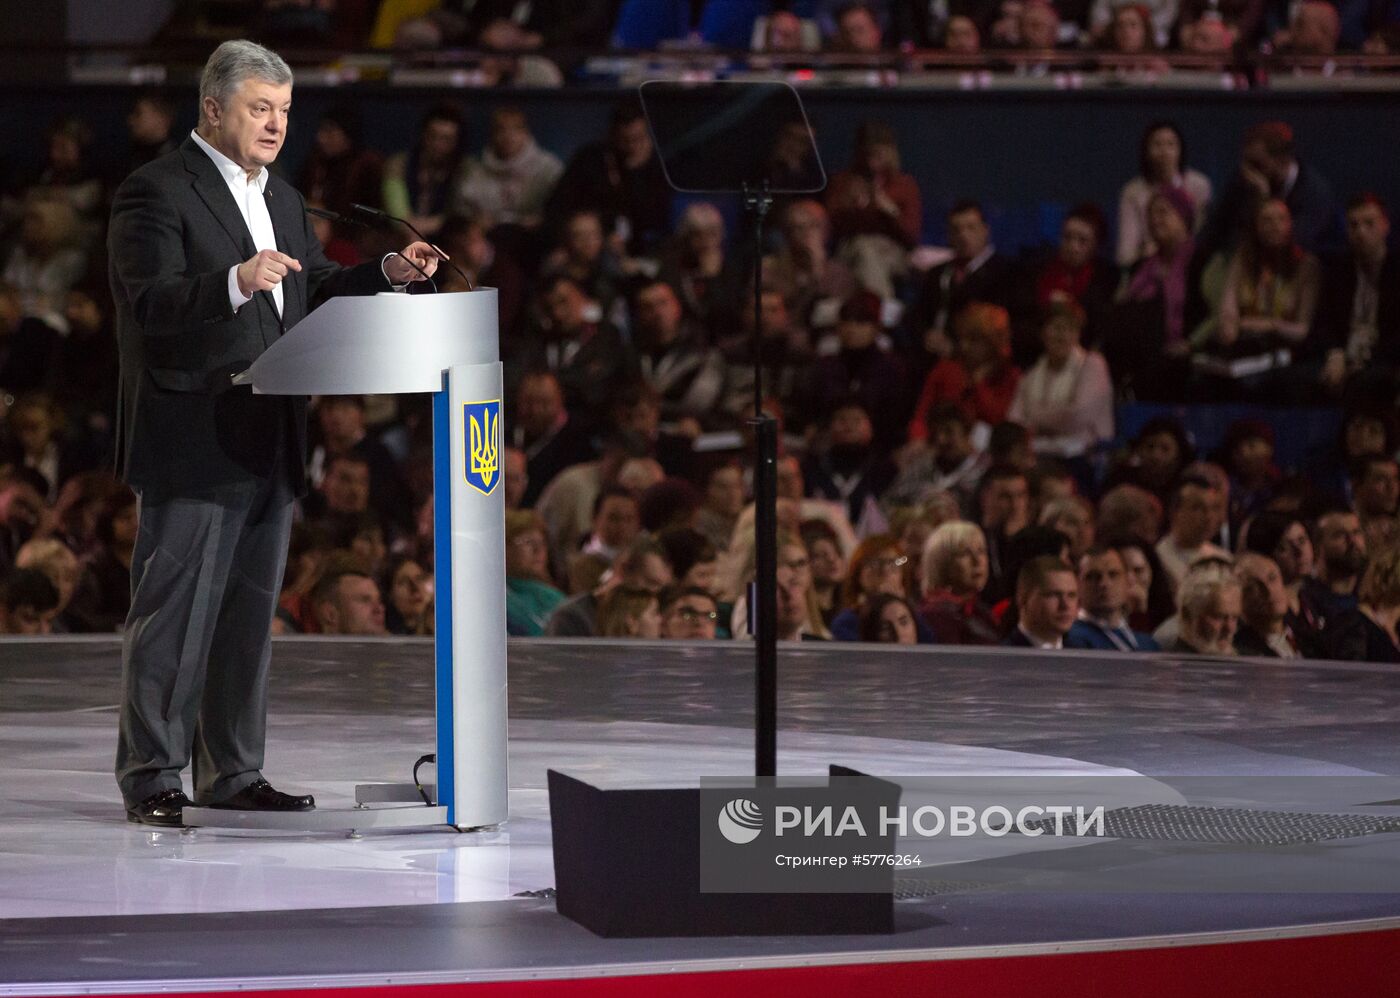 П. Порошенко представил предвыборную программу